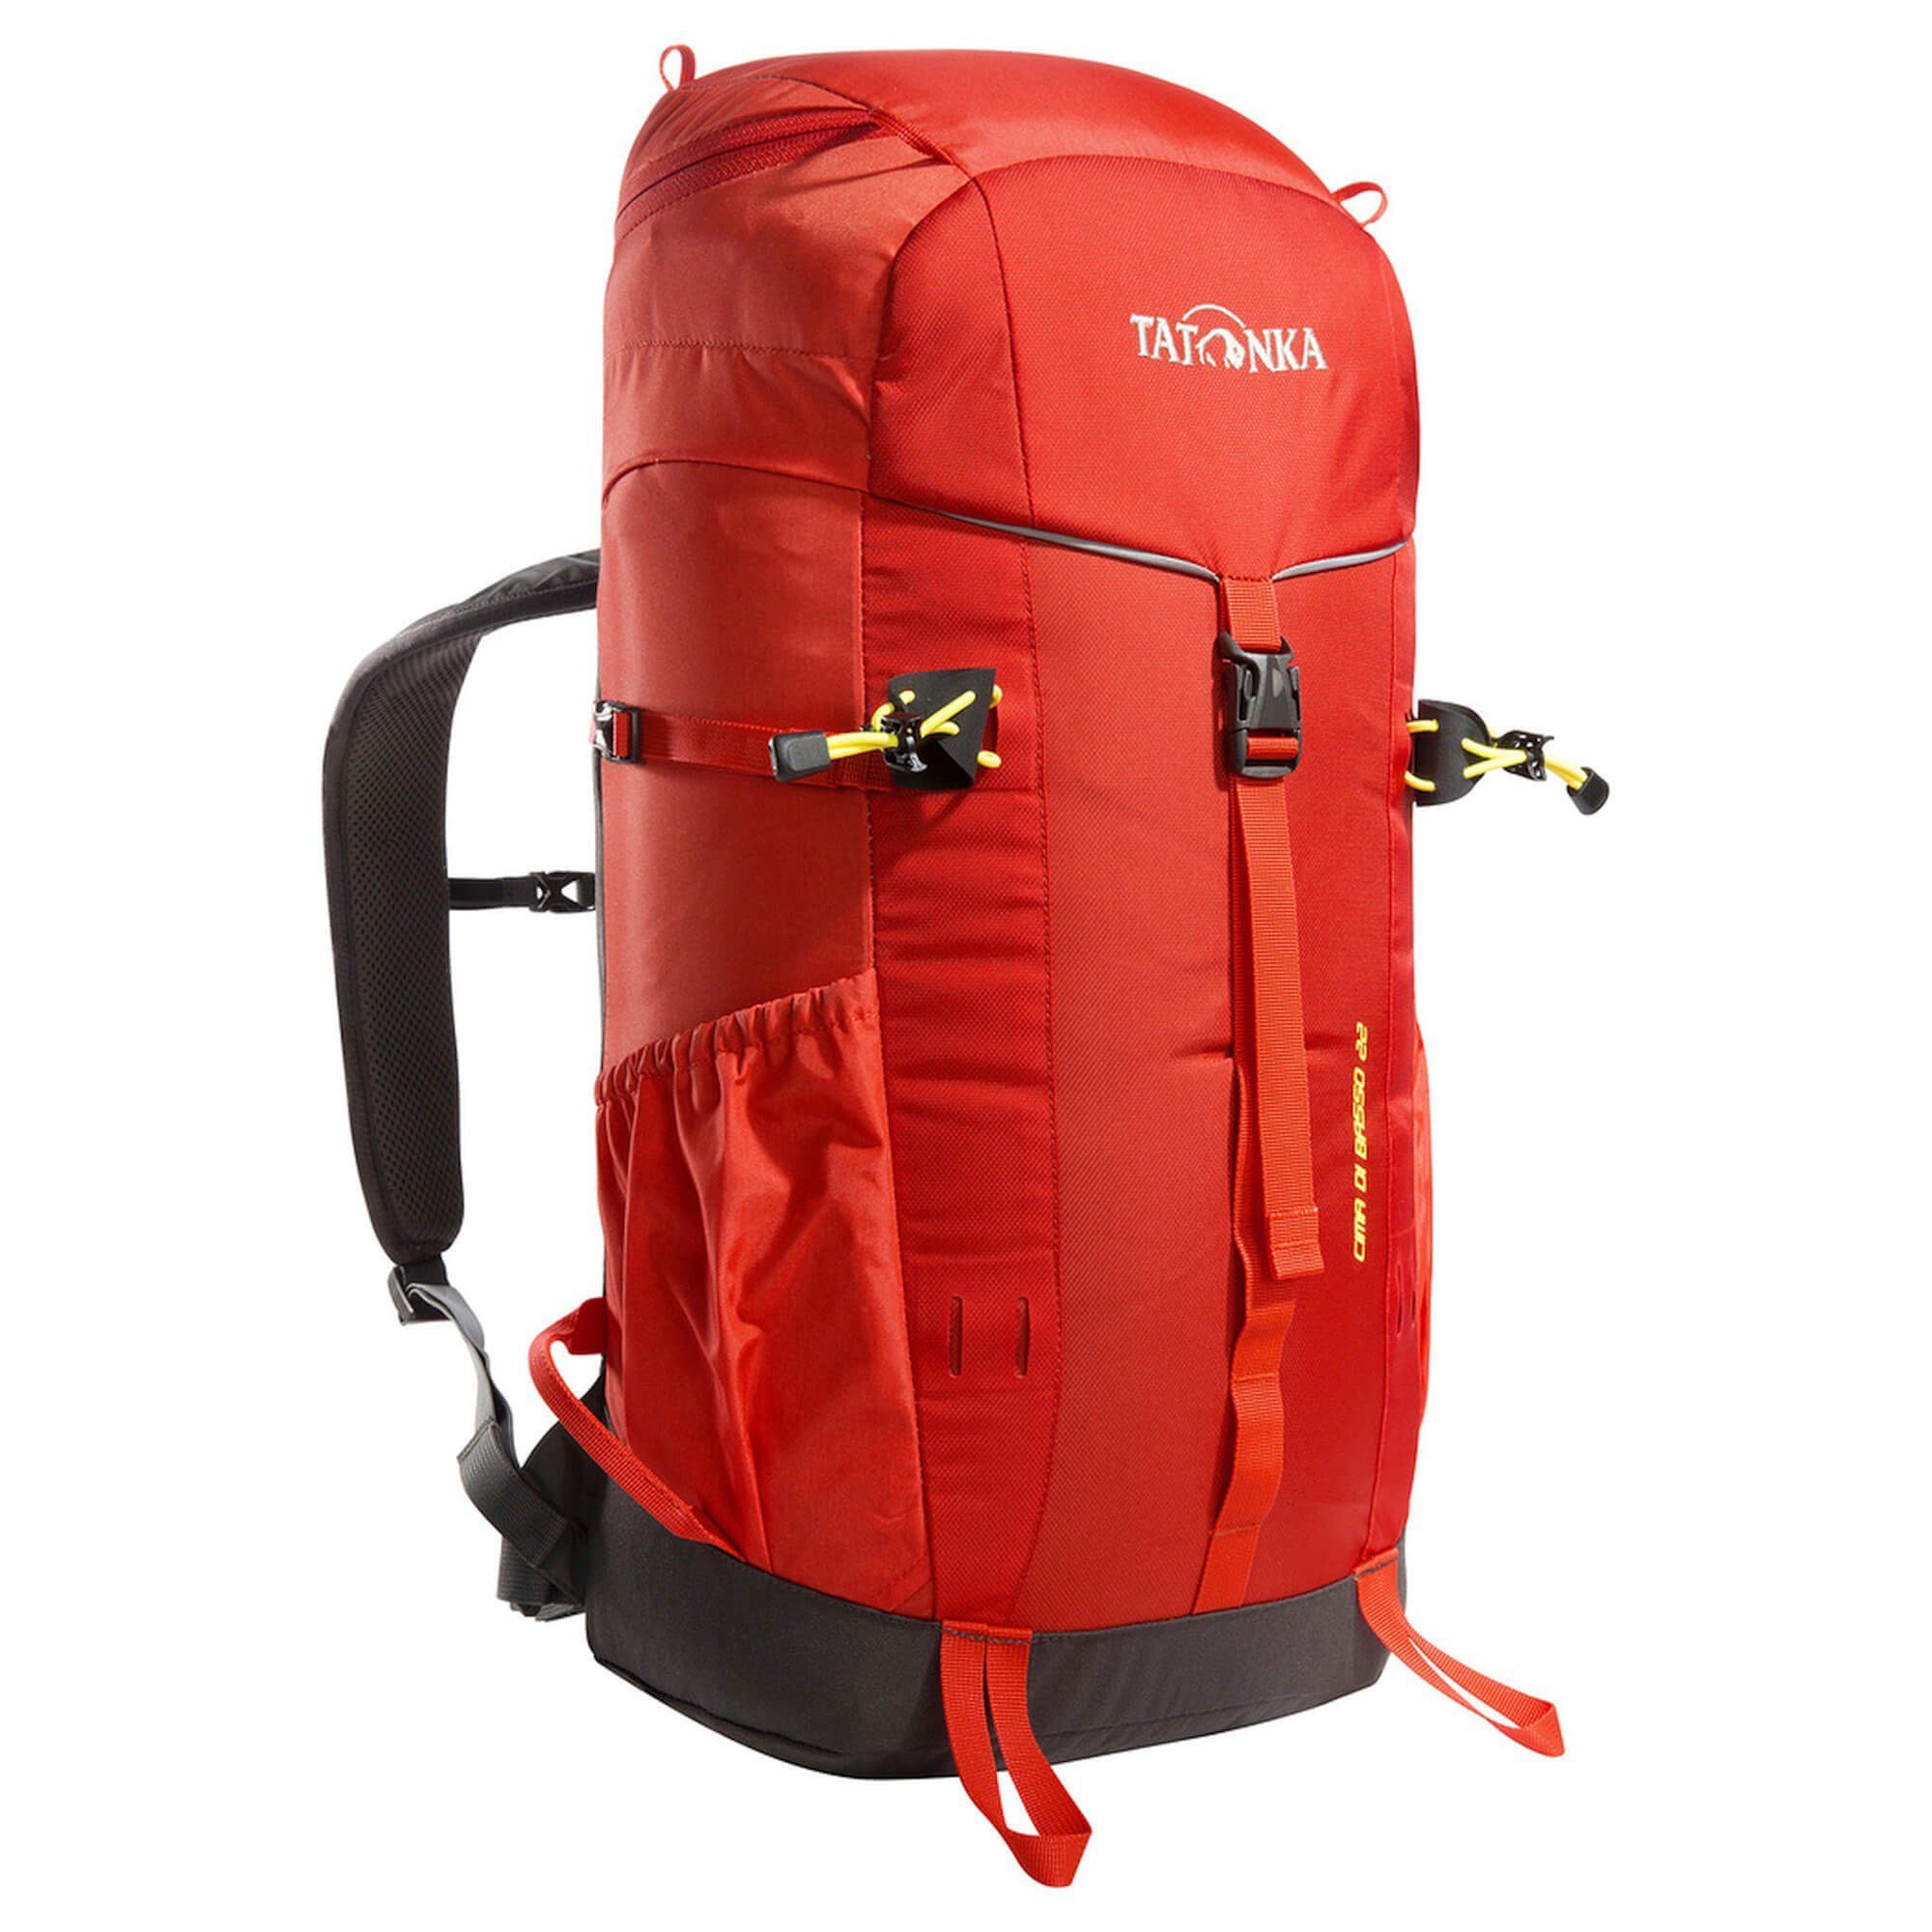 TATONKA® Trekkingrucksack Cima Di Basso 22 - Trekkingrucksack 51 cm red orange